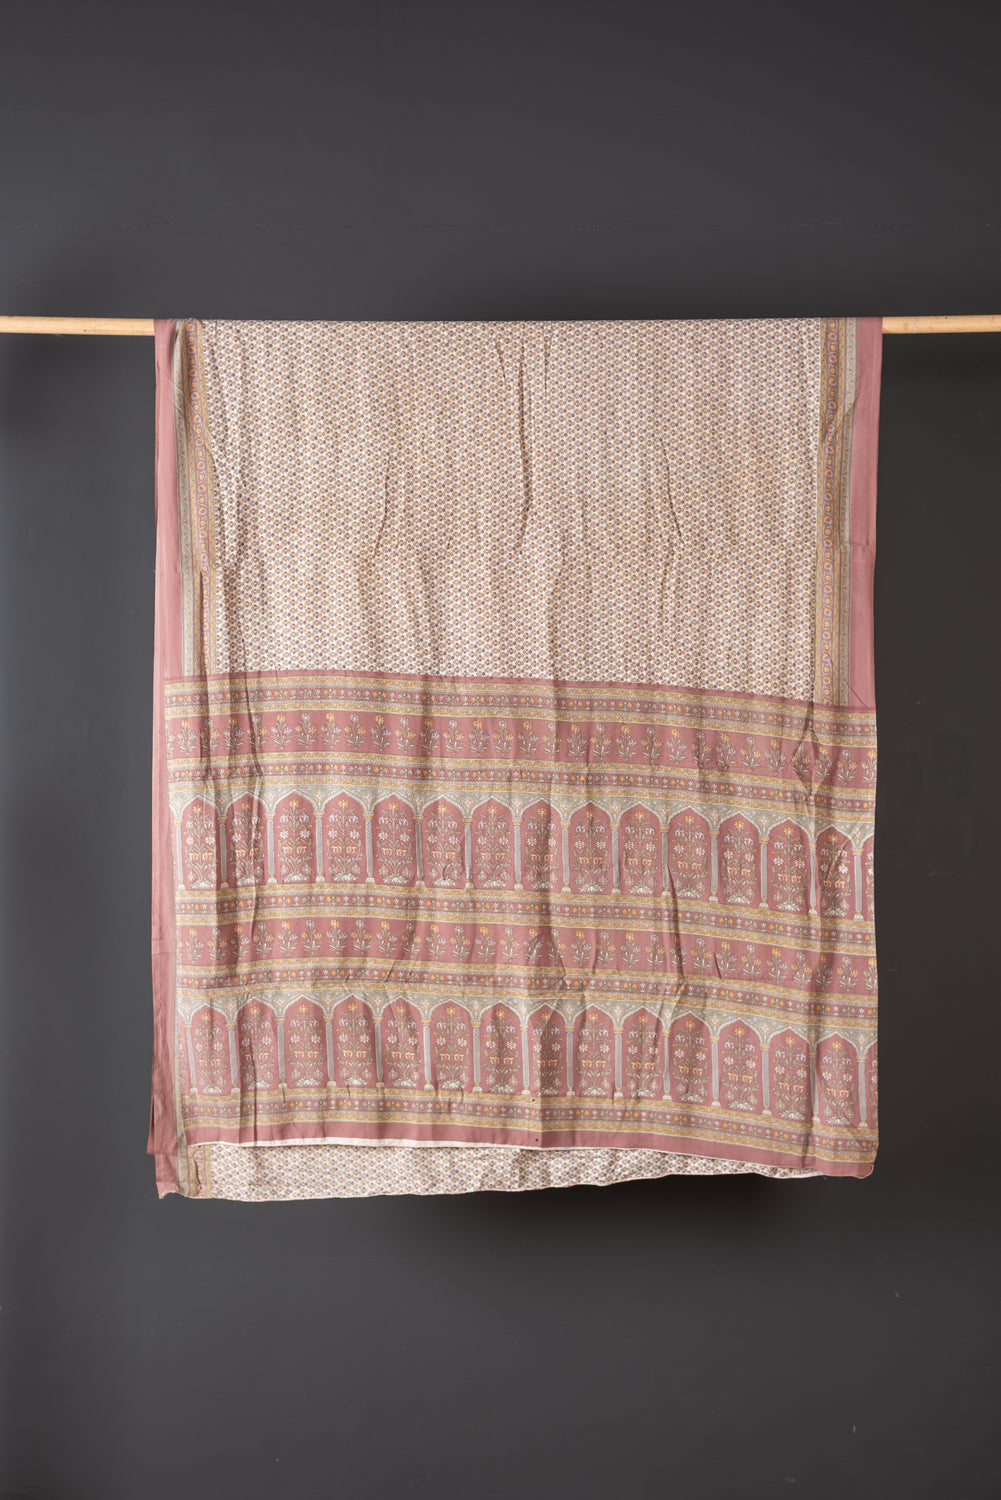 Vintage Silk Sari - 5 Metres Long - 1821